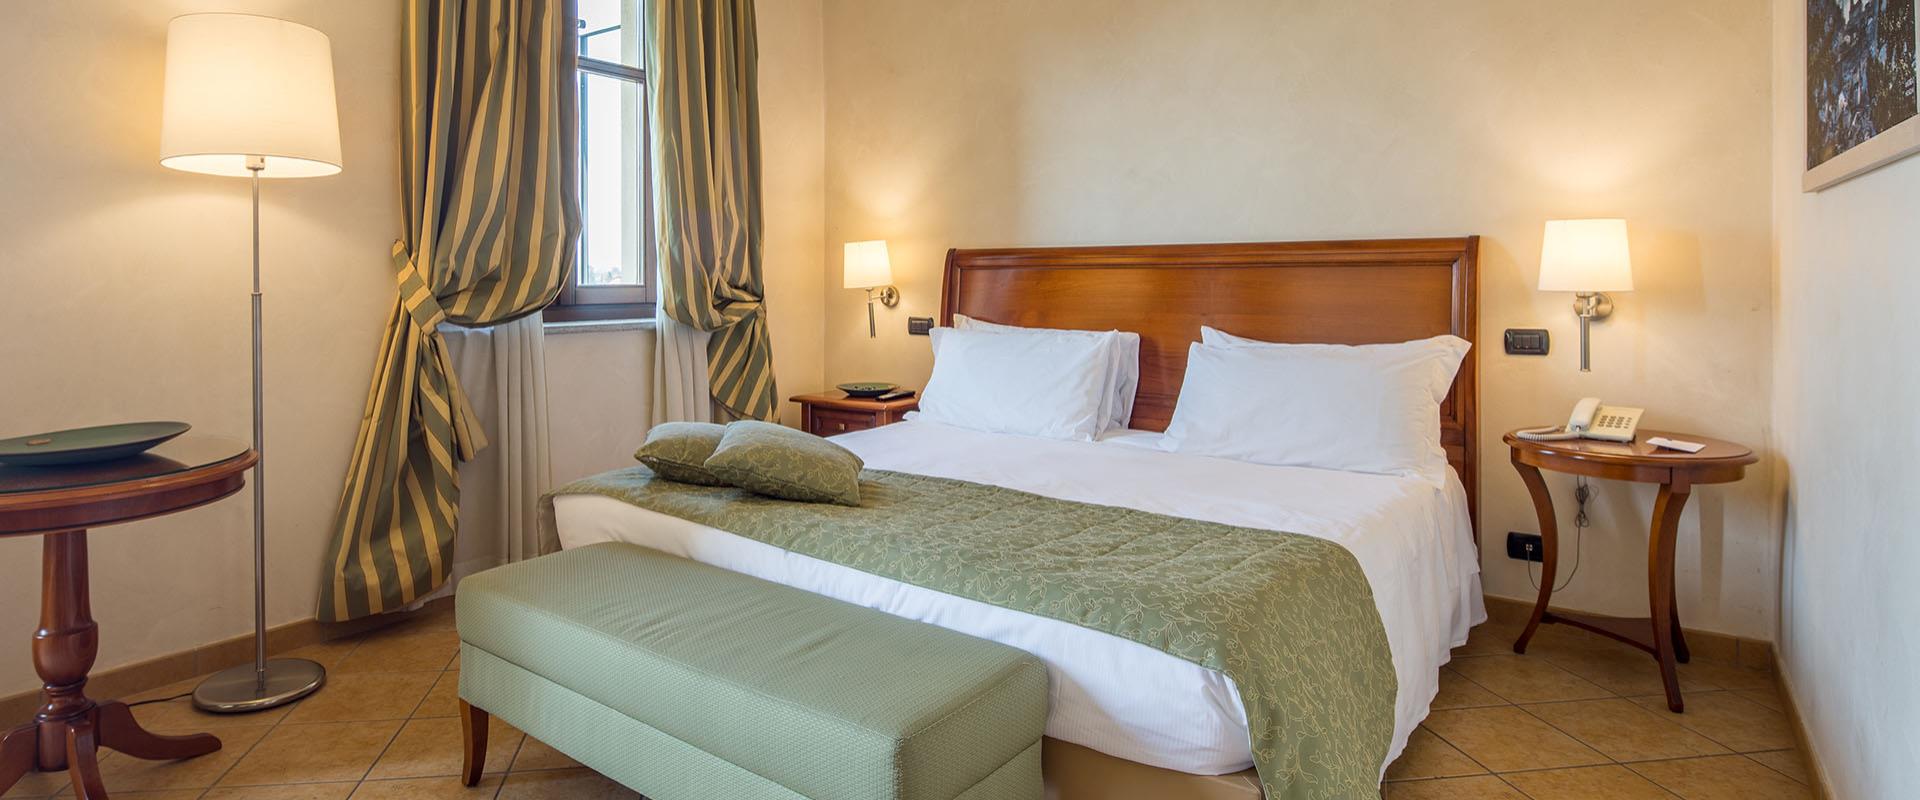 Vous cherchez un hôtel pour votre séjour près de l''''''''aéroport de Turin Caselle? Réservez au Best Western Plus Hotel Le Rondini